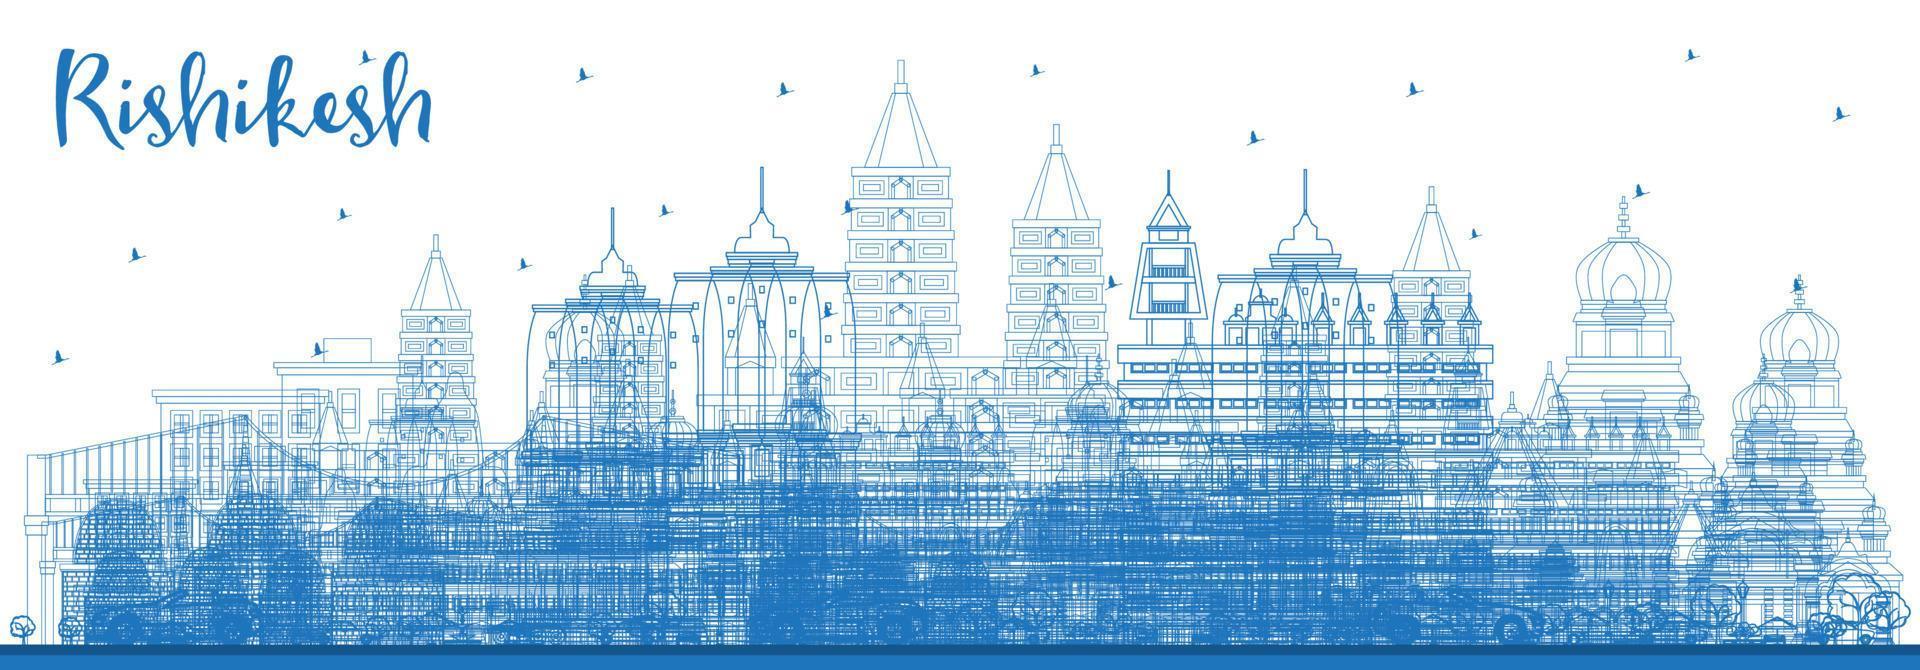 delinear el horizonte de la ciudad de rishikesh india con edificios azules. vector